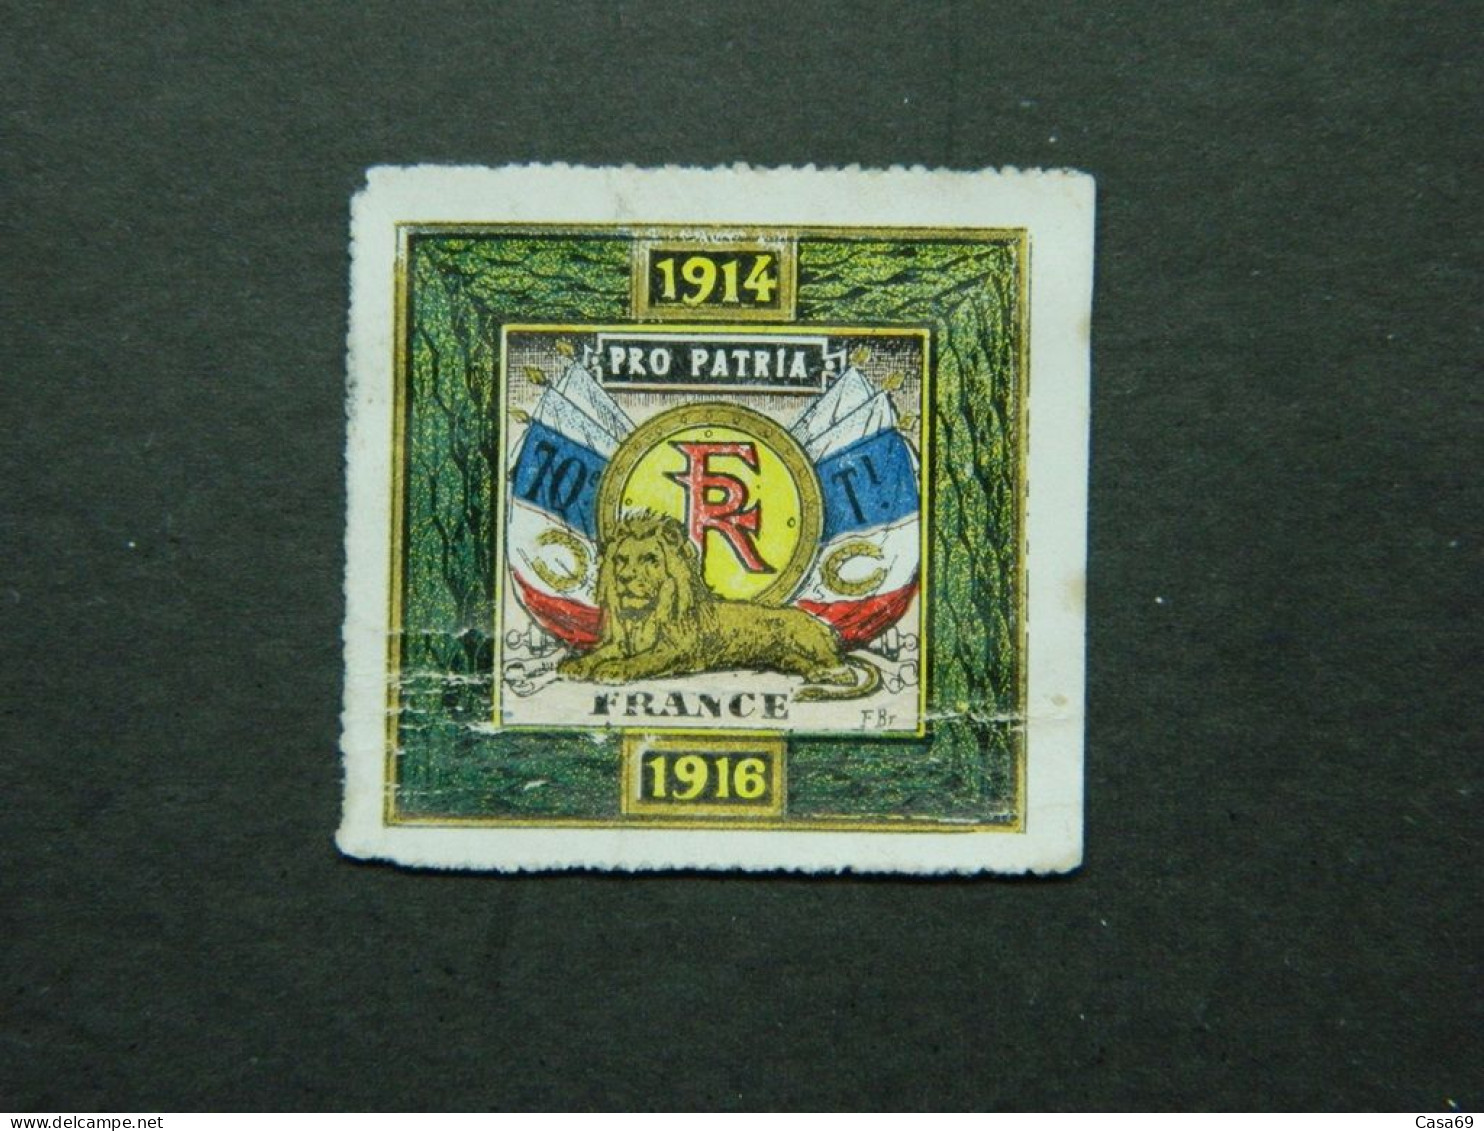 Vignette Militaire Delandre 70ème Bataillon Infanterie Territoriale 1914 1916 - Militärmarken